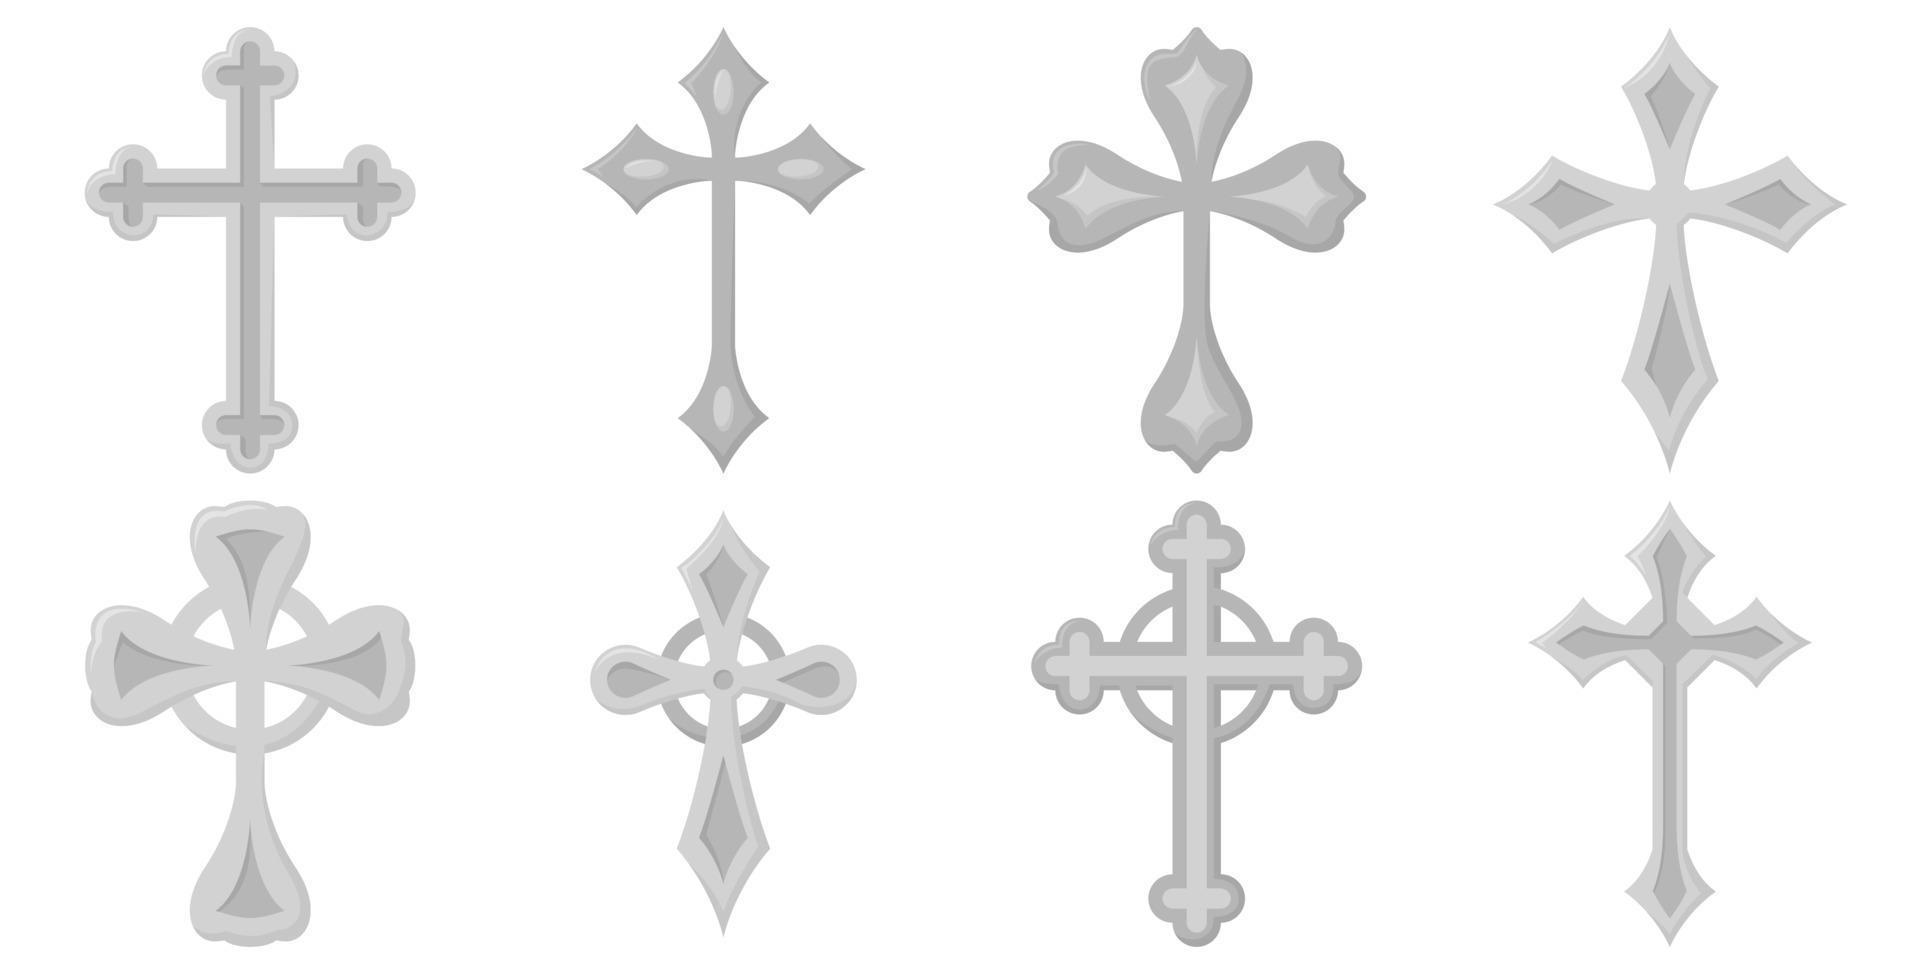 Ensemble de croix chrétienne isolé sur fond blanc vecteur